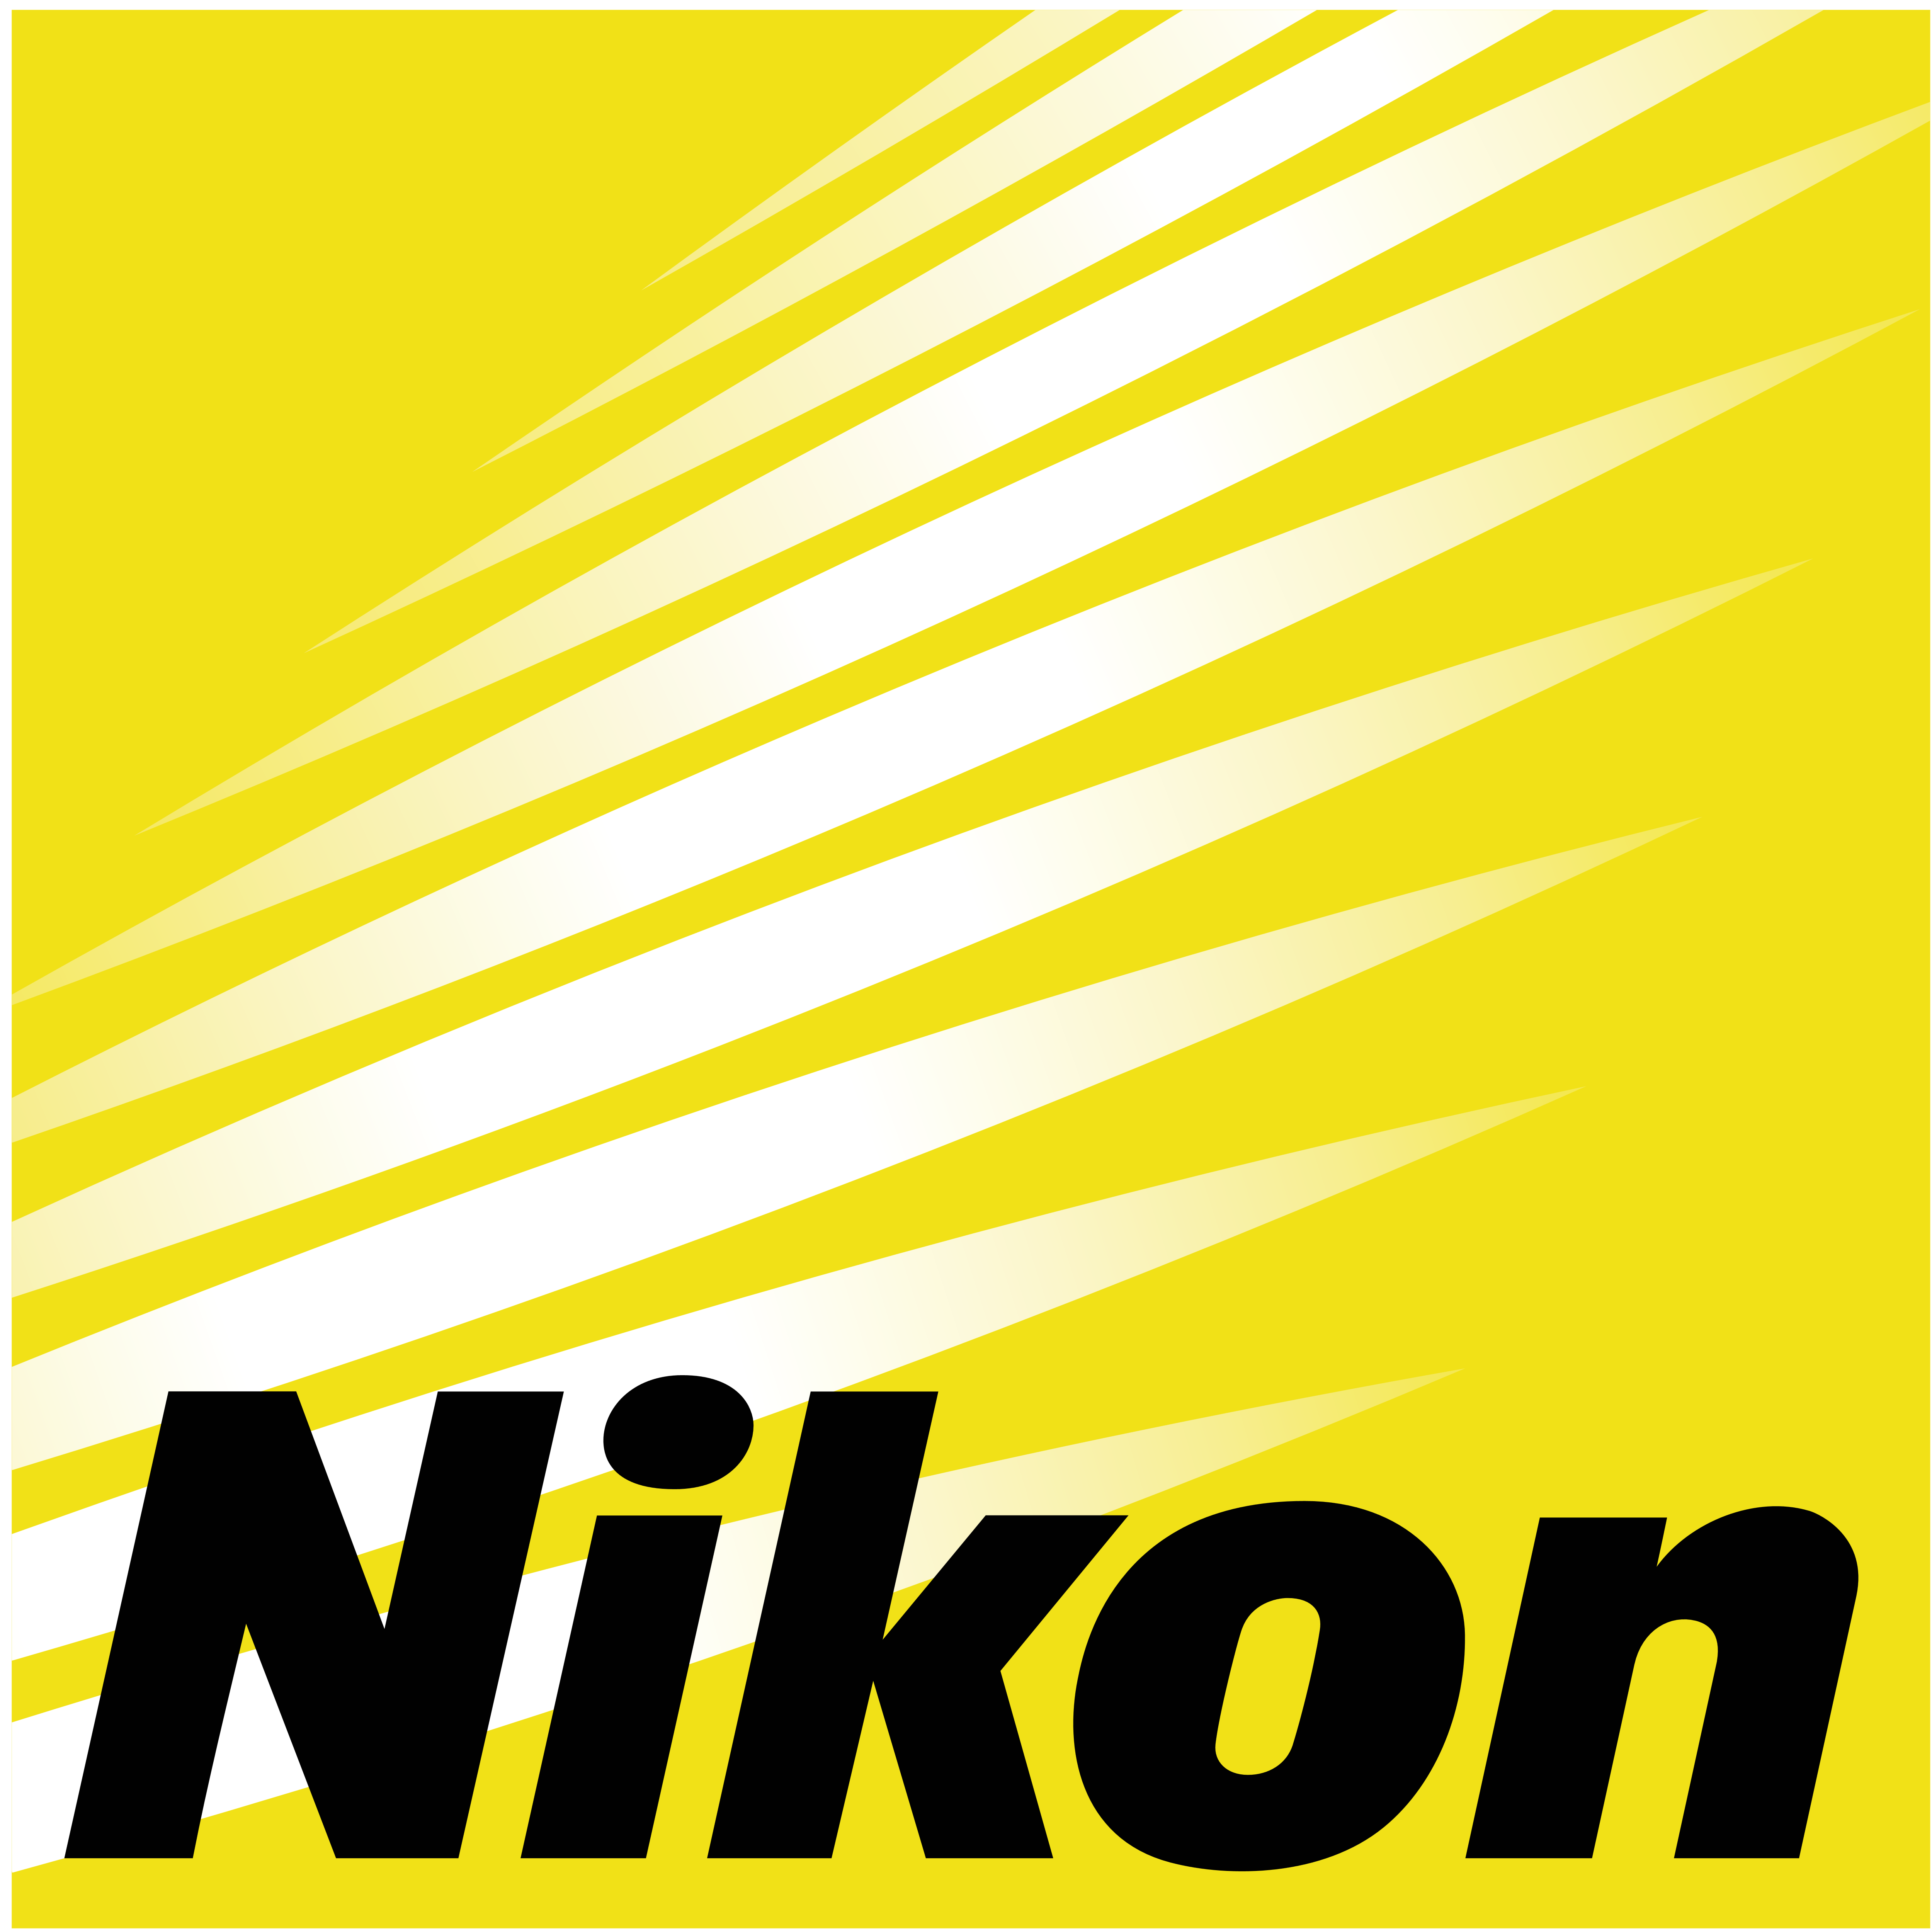 Nikon Metrology, Inc.